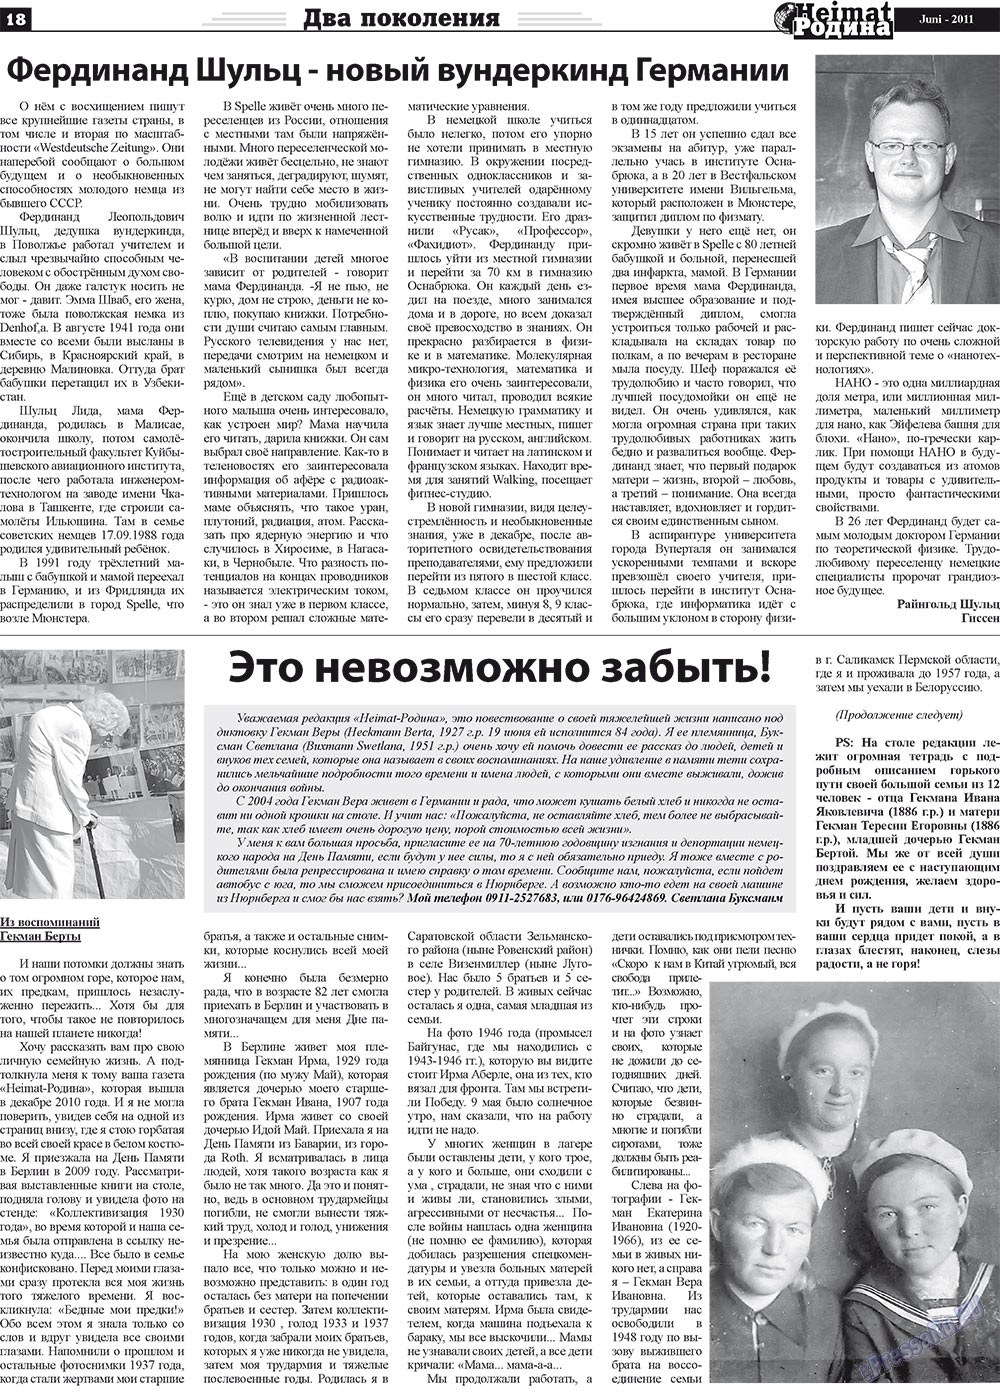 Heimat-Родина (газета). 2011 год, номер 6, стр. 18